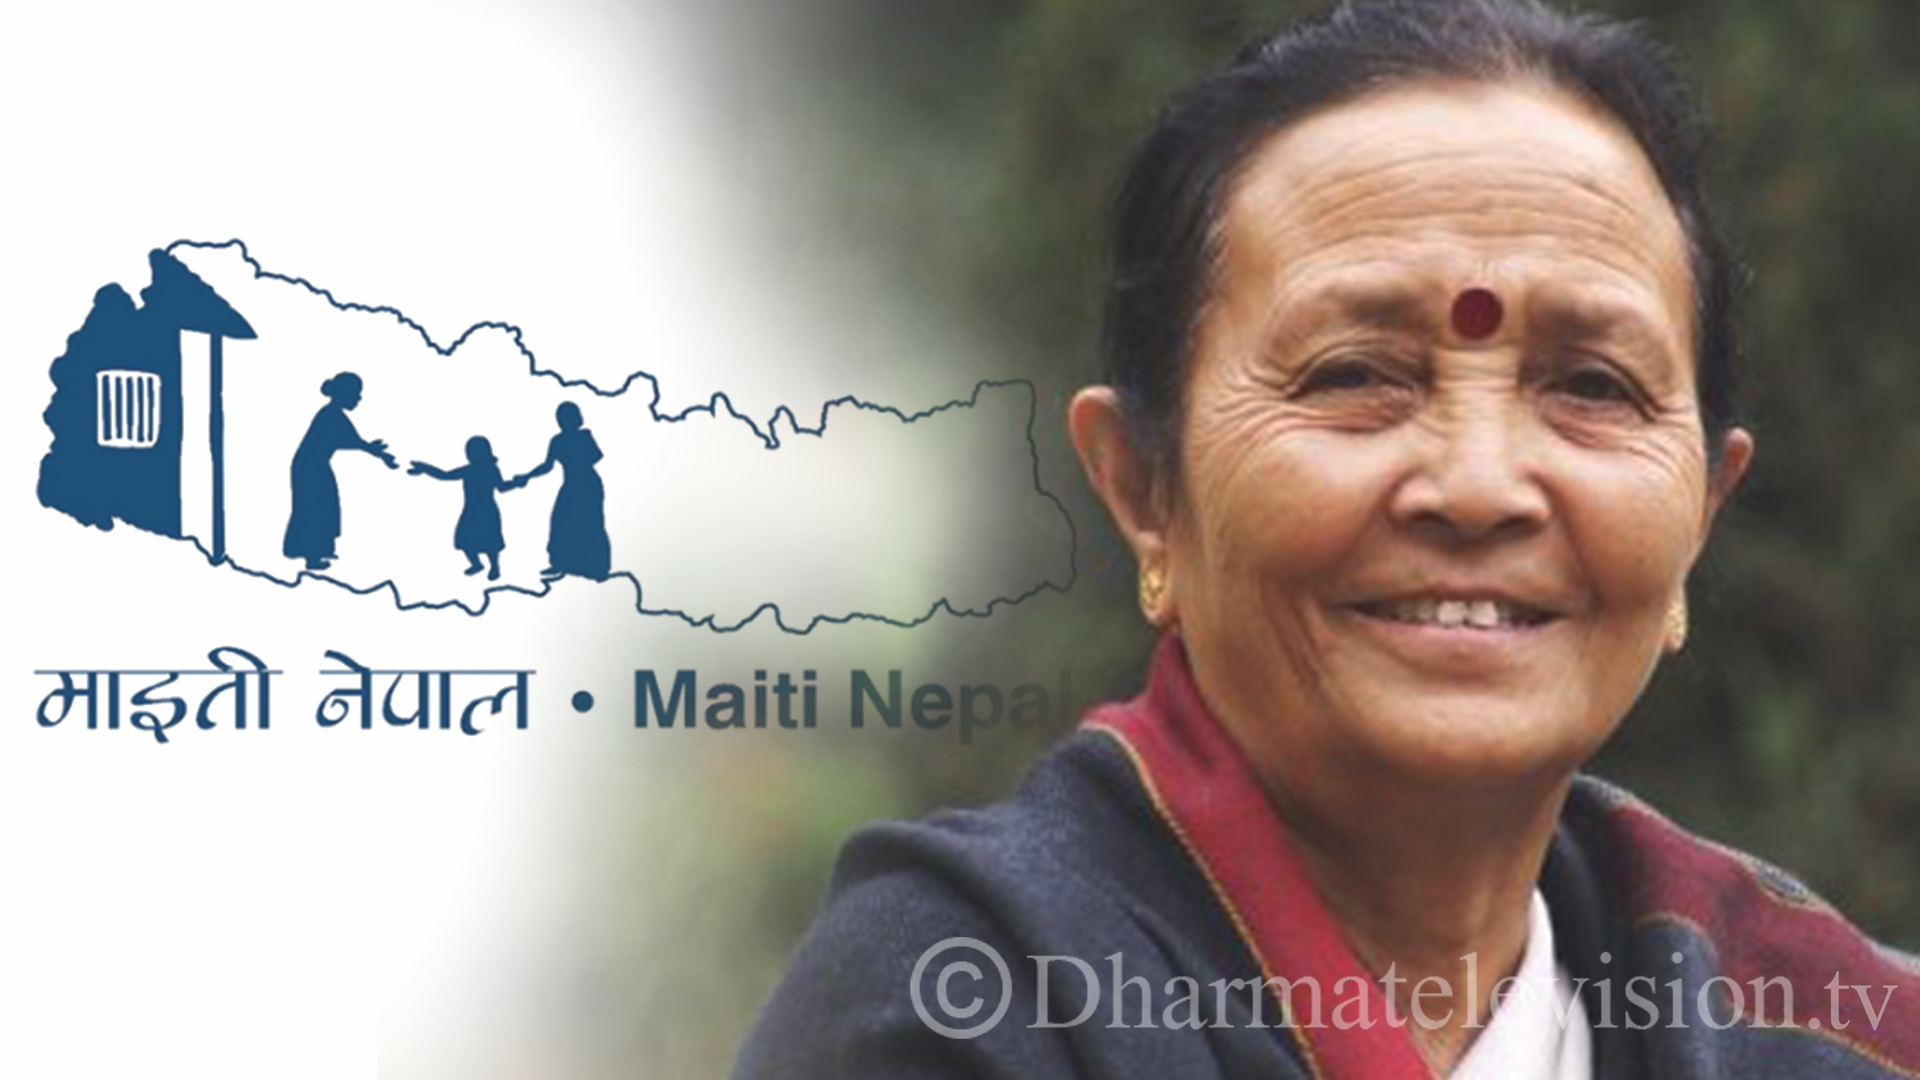 Maiti Nepal To Be Awarded